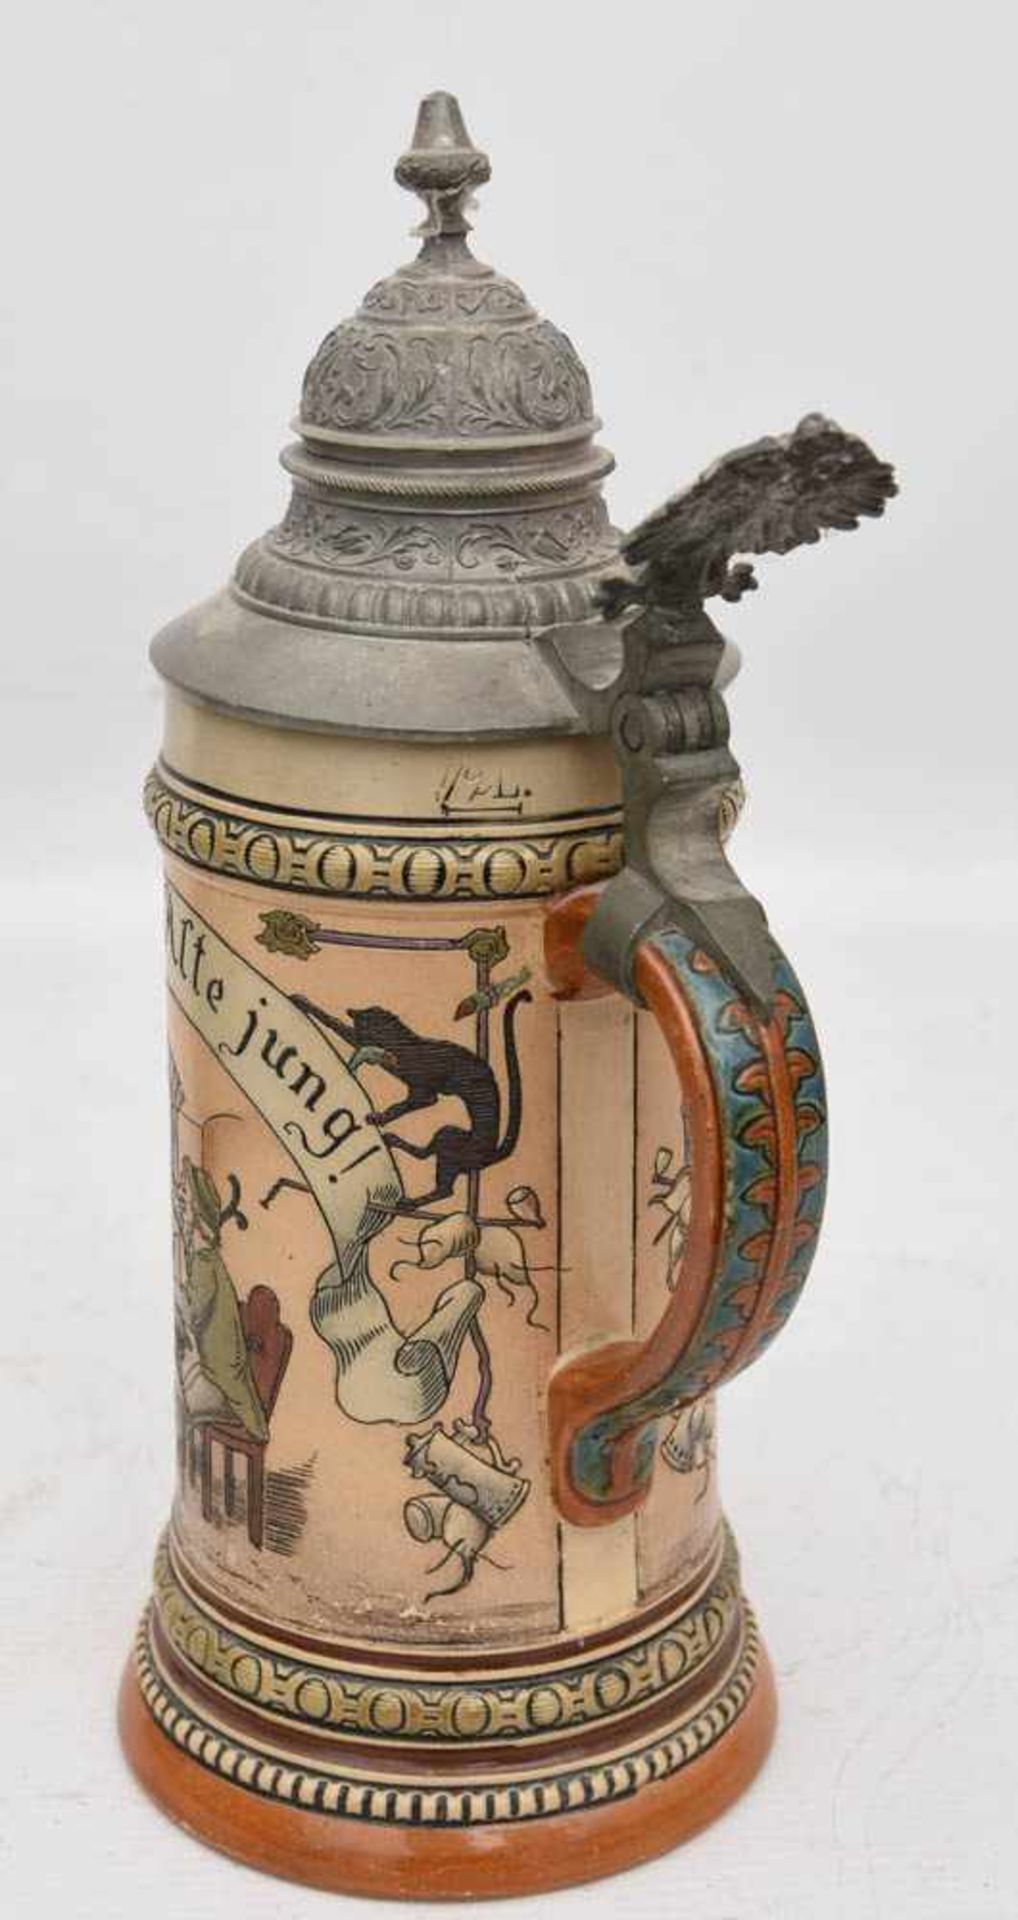 BIERKRUG "EIN GUTER TRUNK", bemalte glasierte Keramik/Zinn gemarkt, um 1900Zinndeckelkrug mit - Bild 4 aus 4